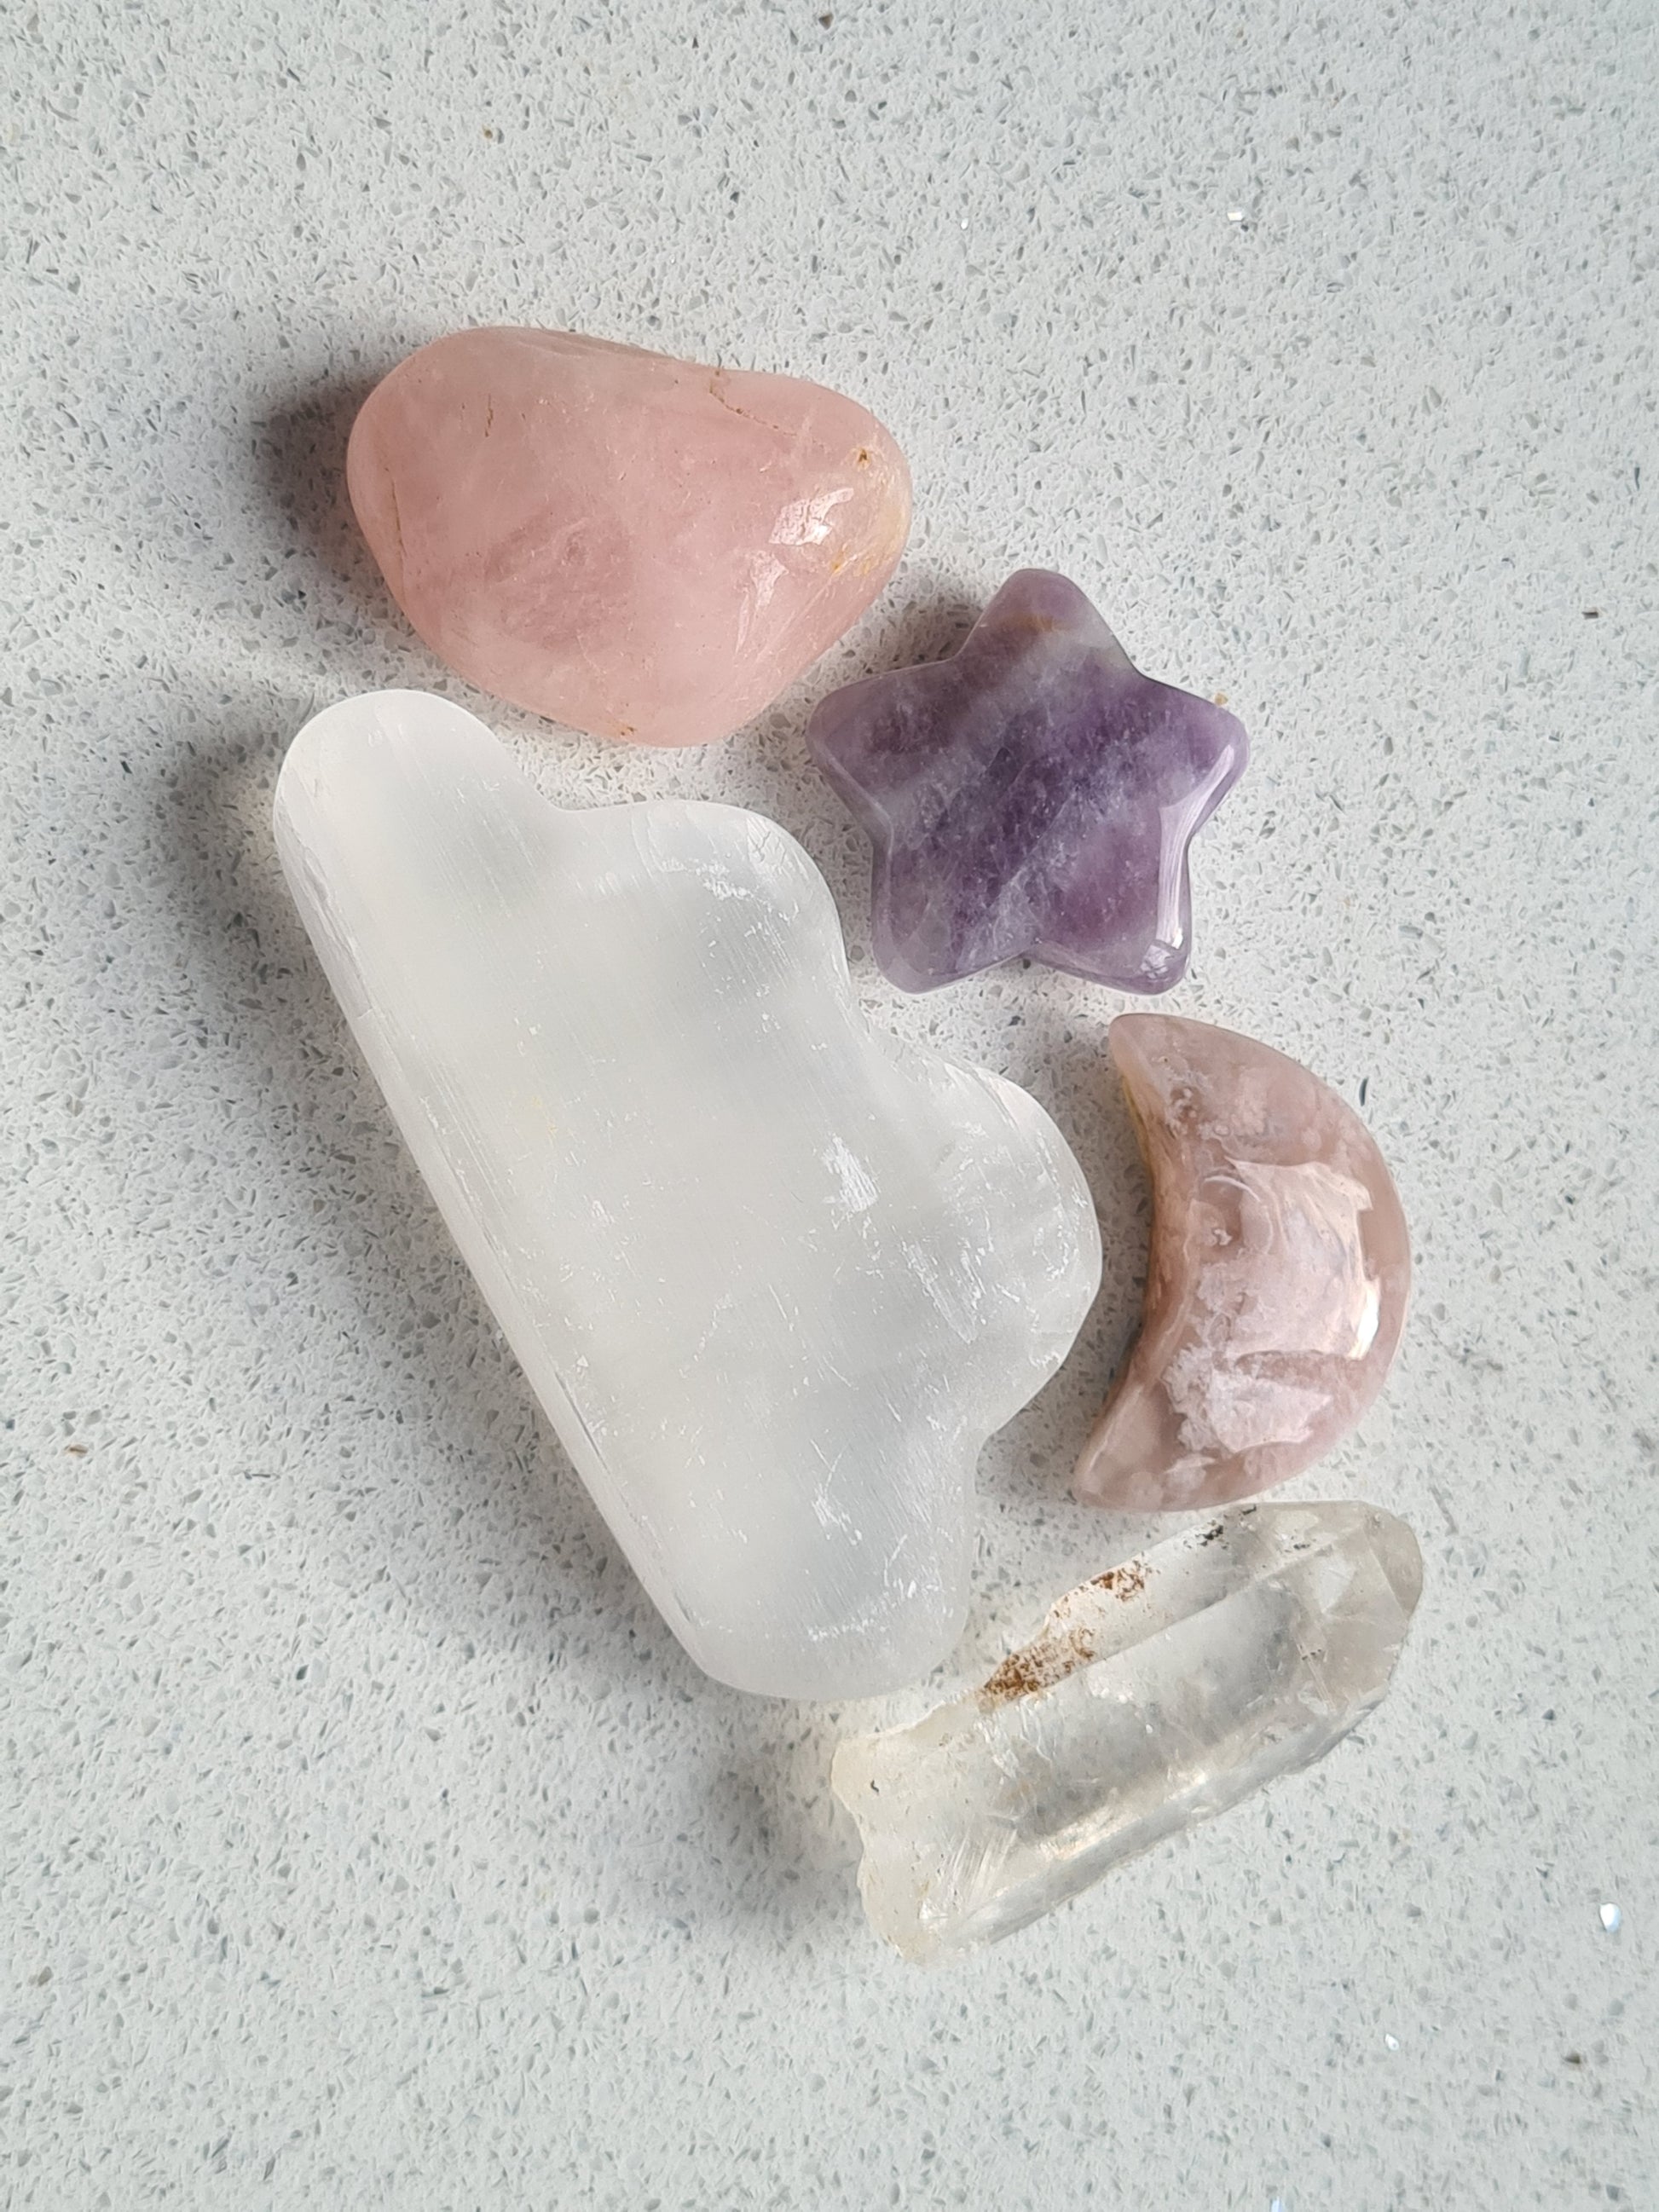 Celestial crystal set containing a selenite cloud, a flower agate moon, a dream amethyst star, a raw lemurian quartz point and a rose quartz tumble.